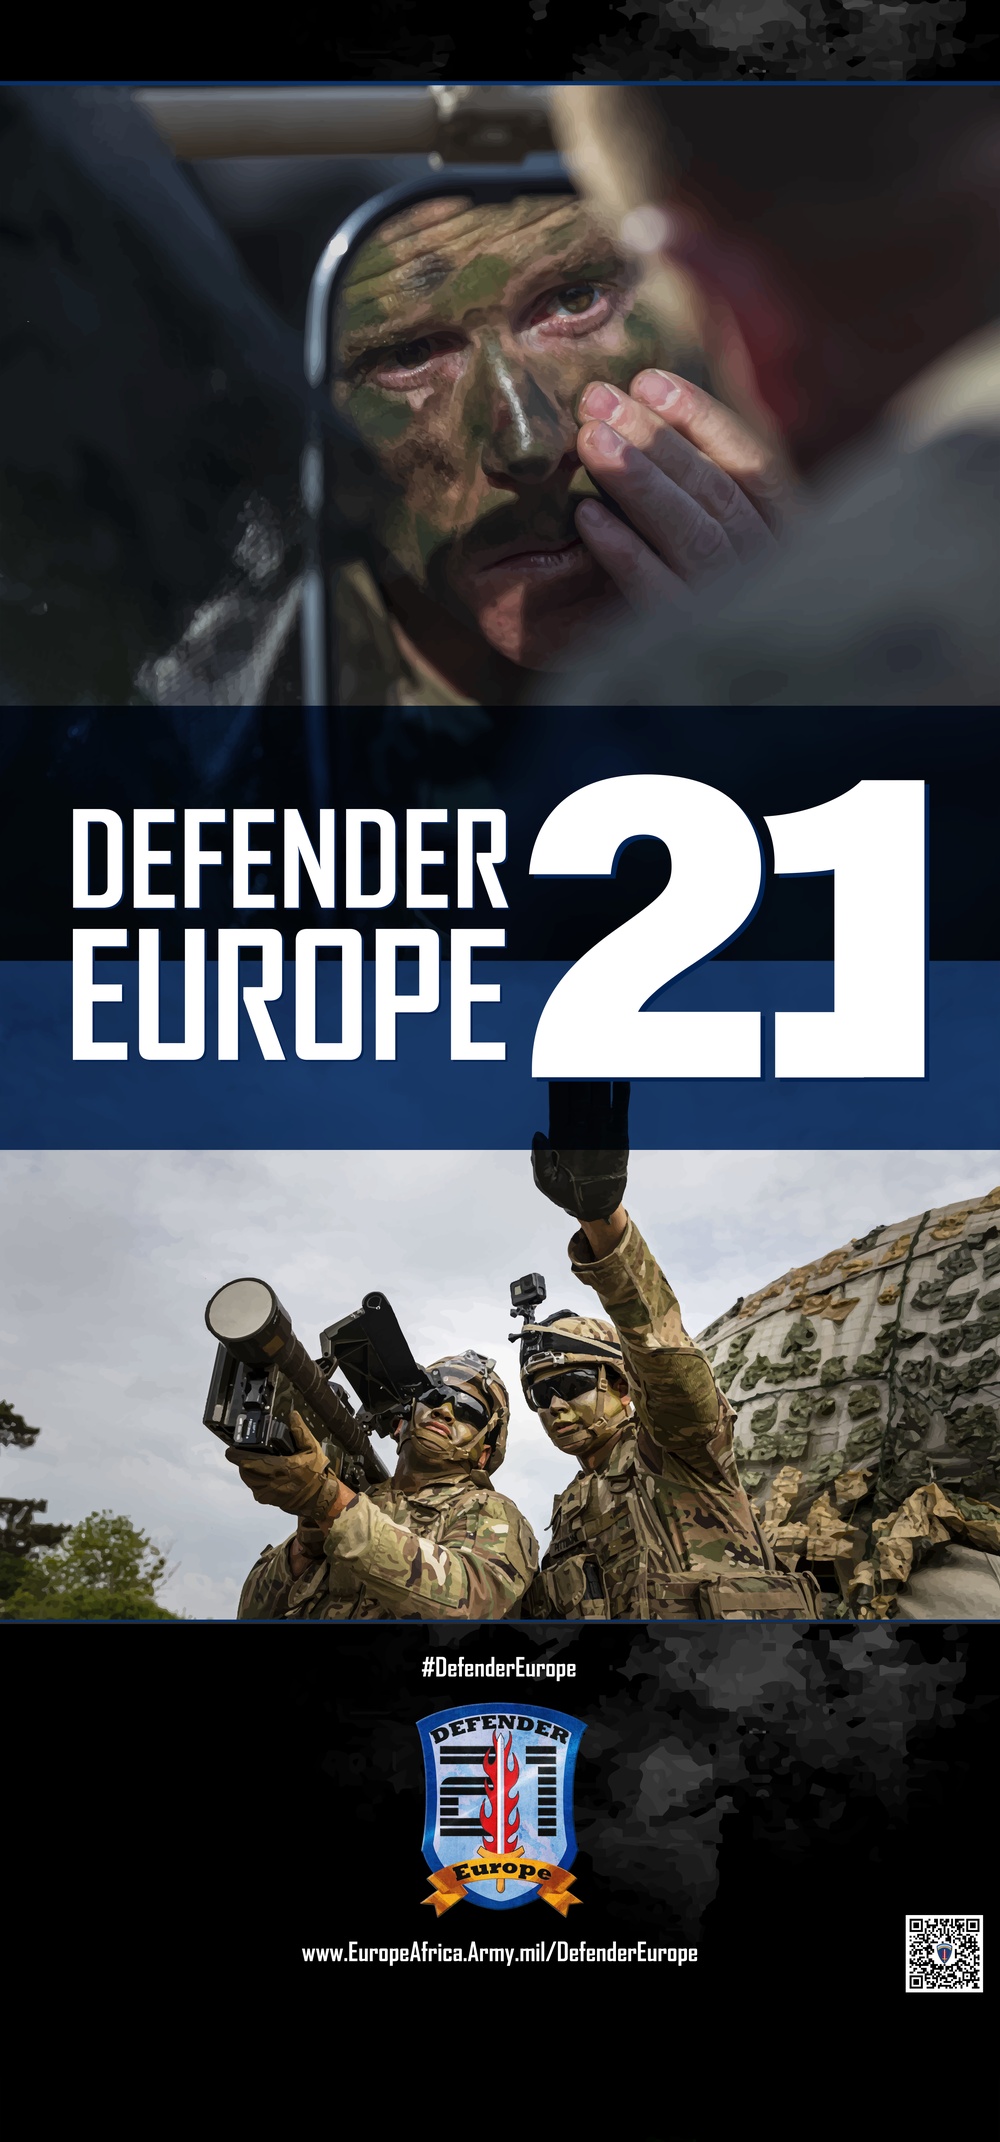 DEFENDER-Europe 21 life-size pop-up poster